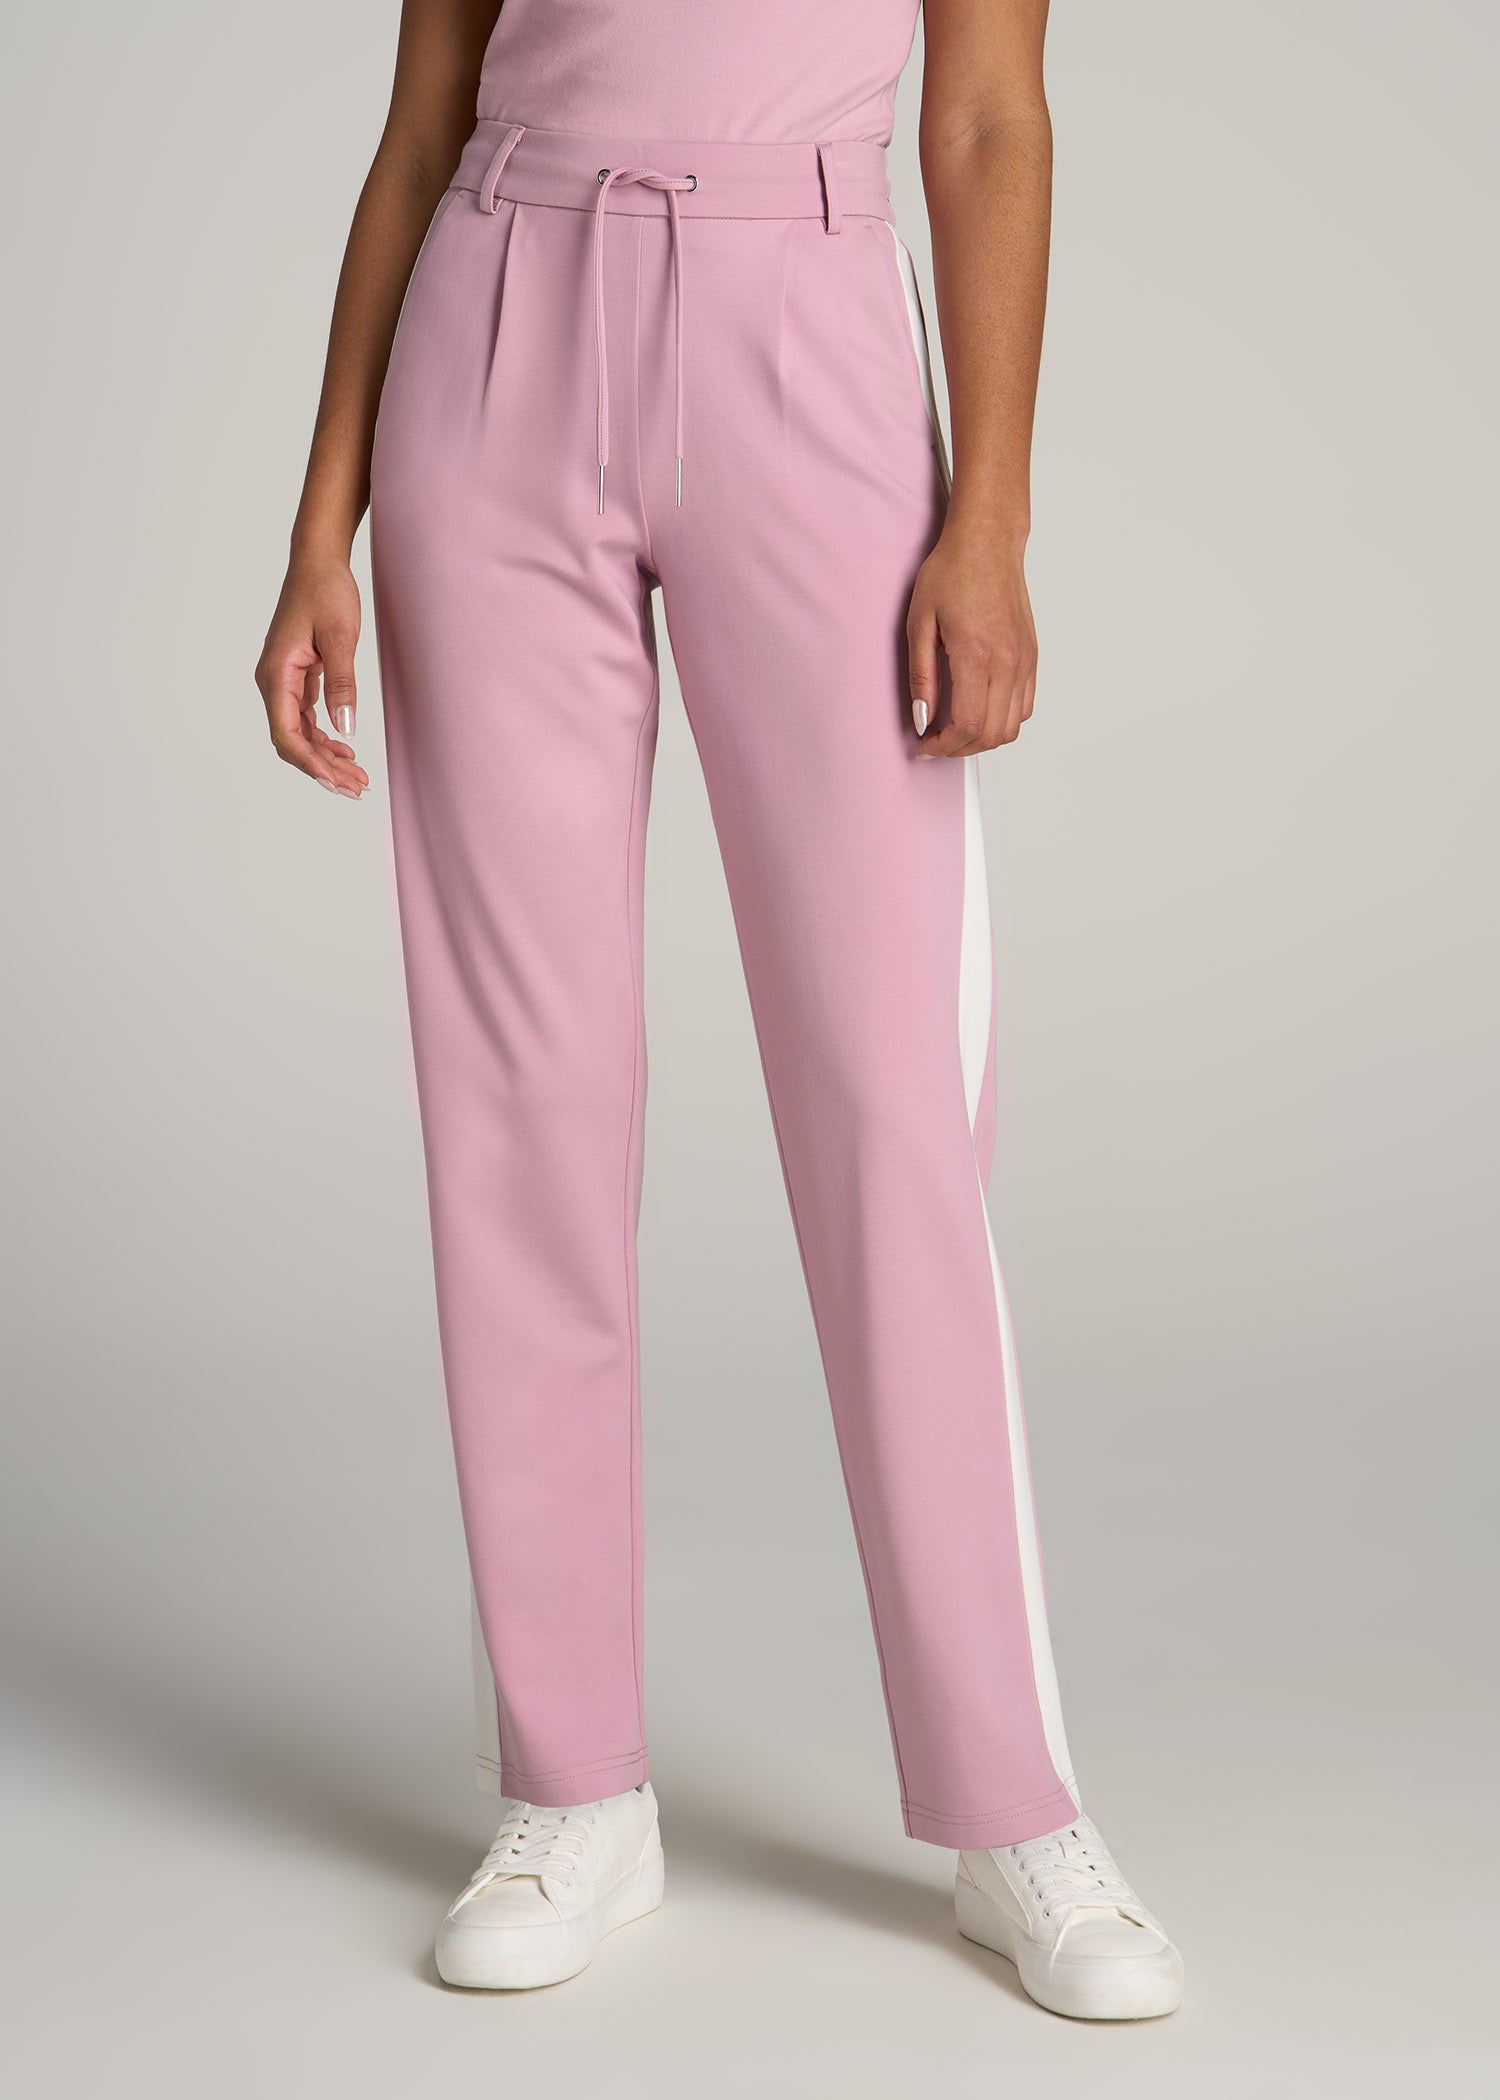 Womens Pink Stripe Pants